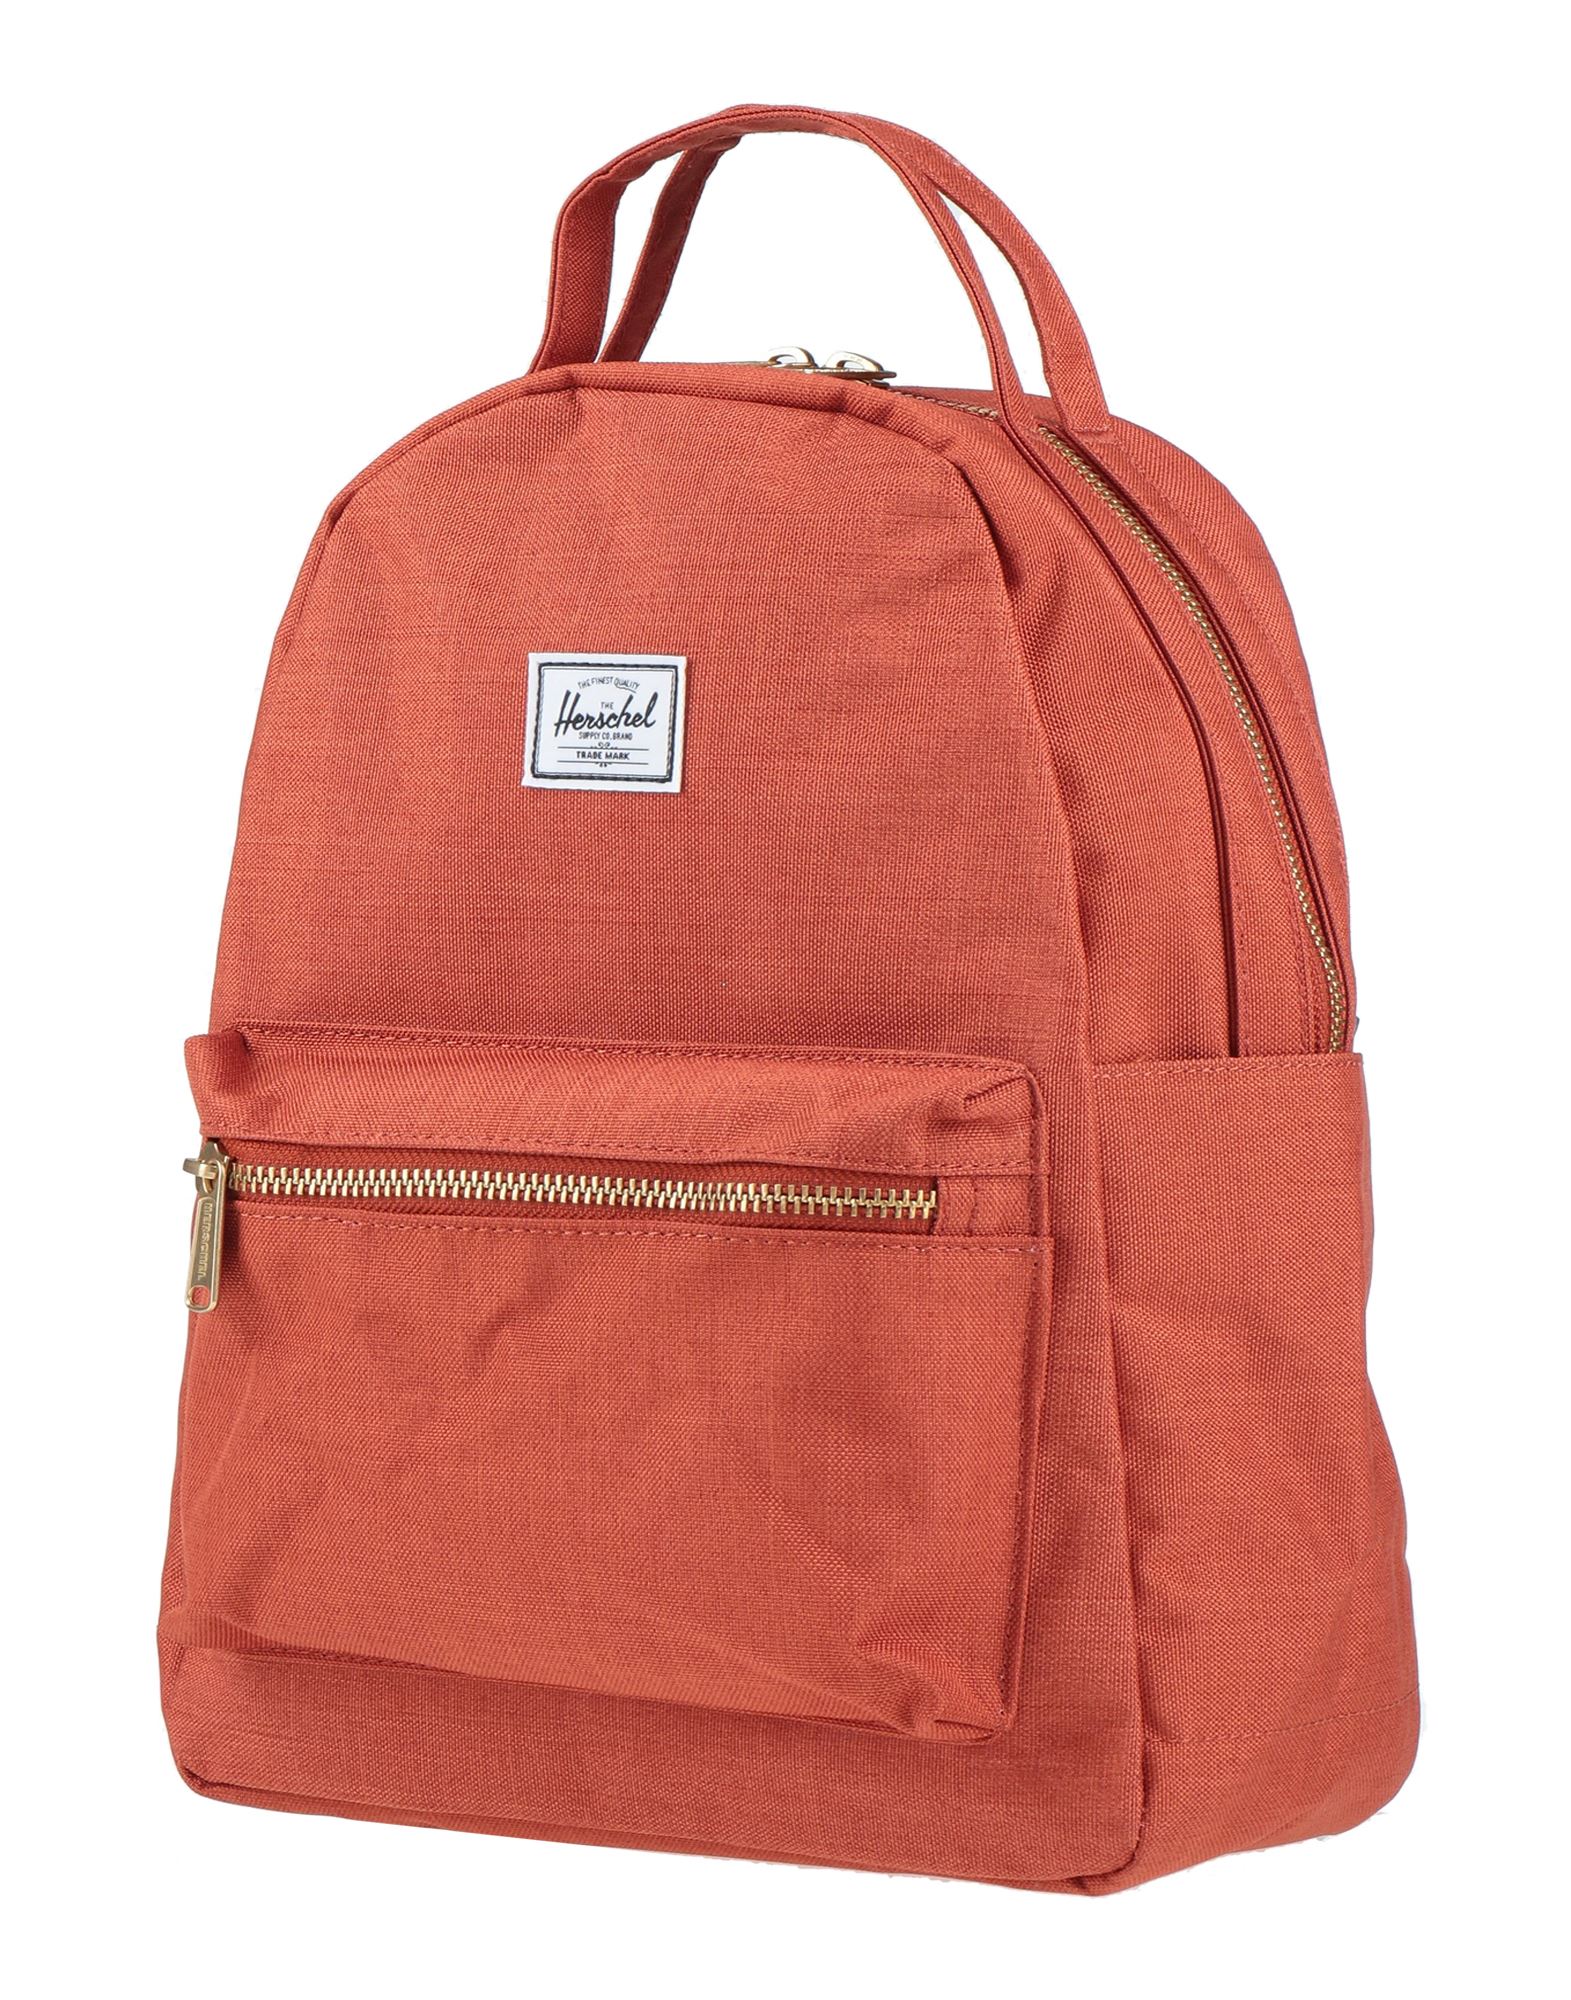 Shop Herschel Supply Co Backpacks In Tan